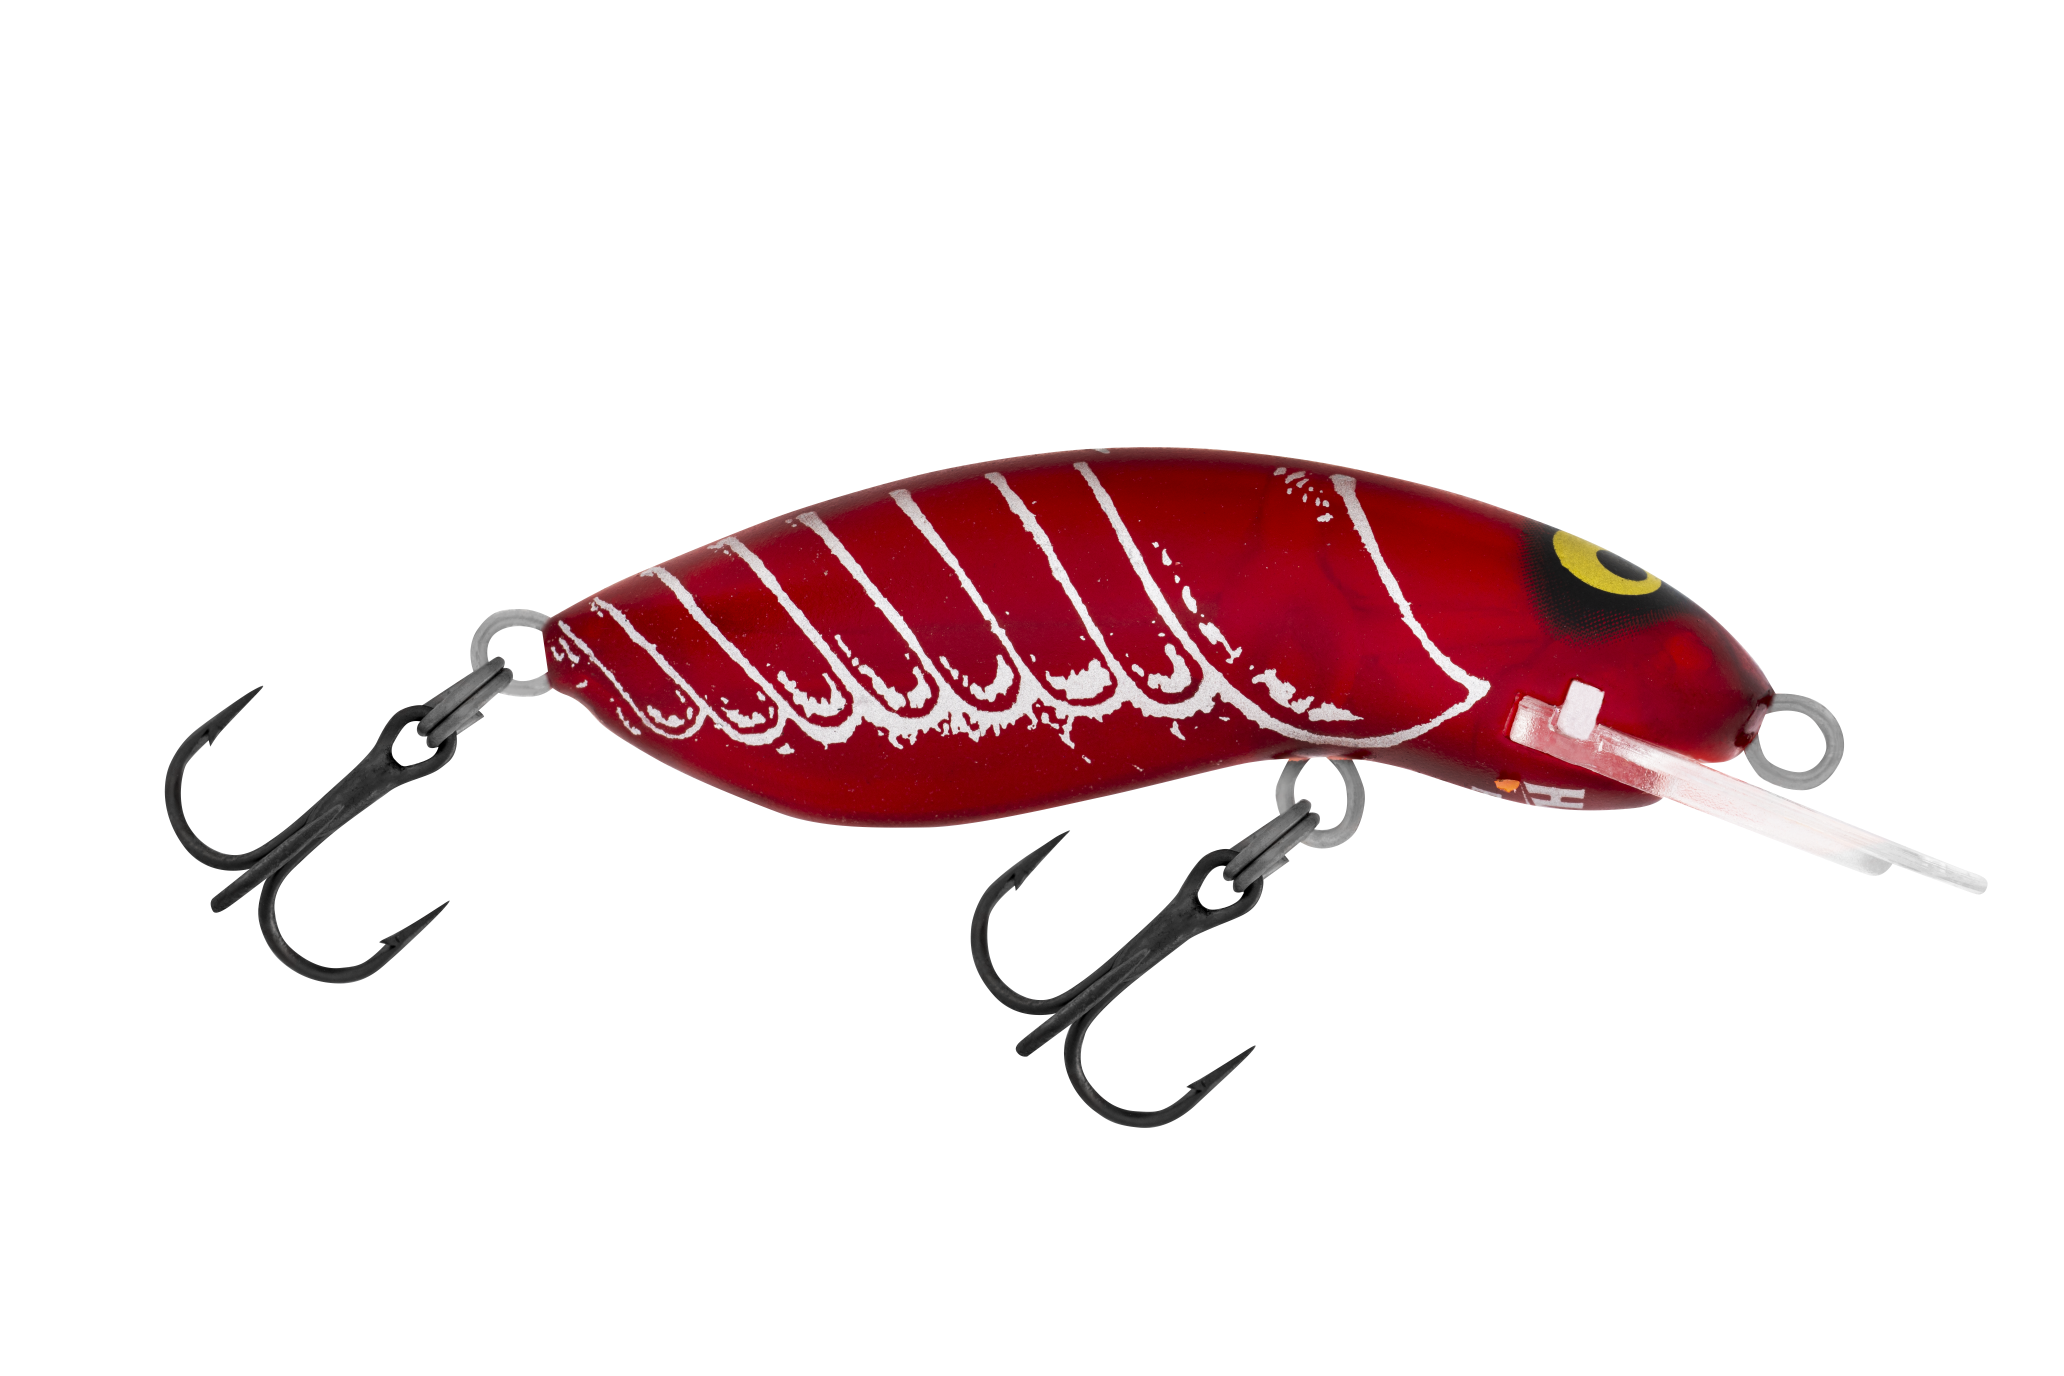 R46 Bloody Crawfish